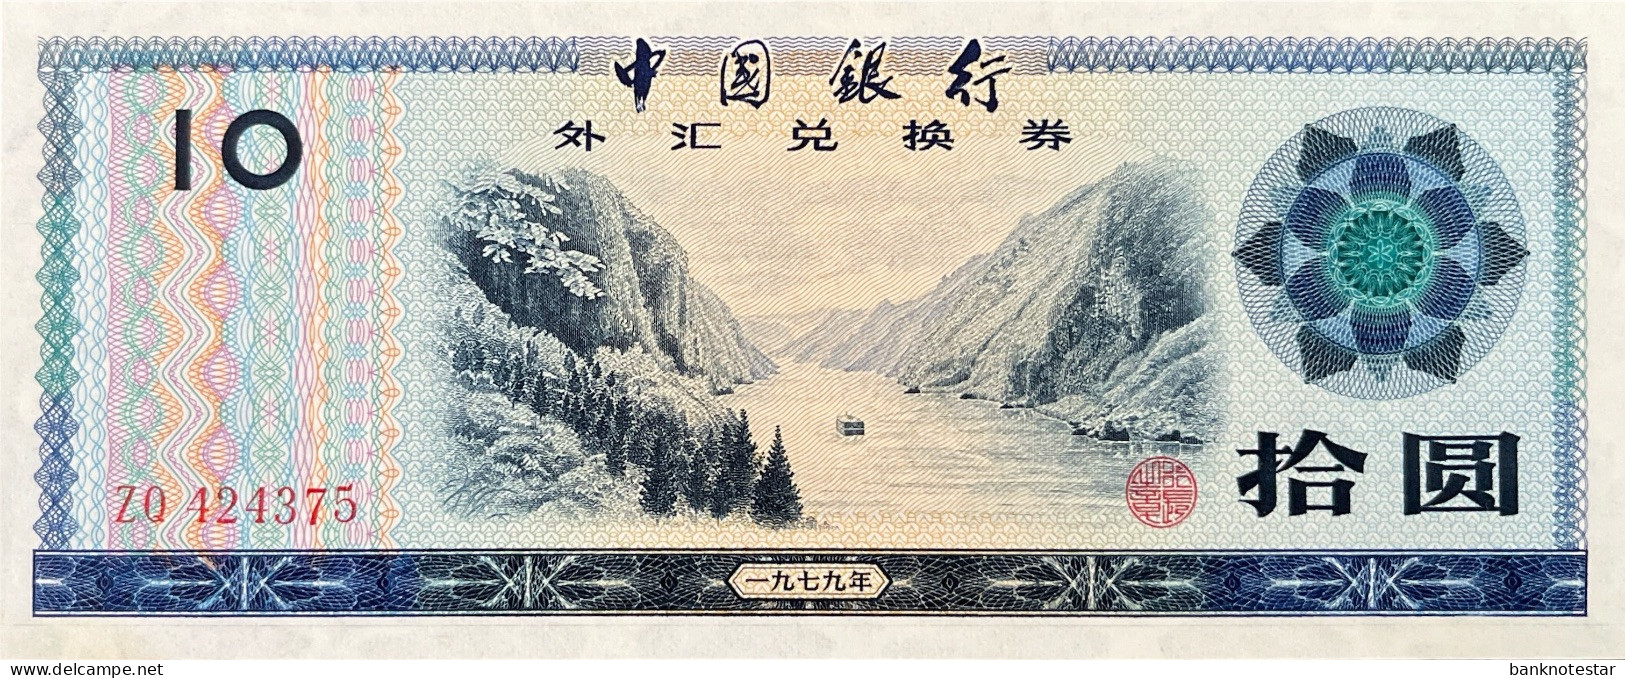 China 10 Yuan, P-FX5 (1979) - UNC - China